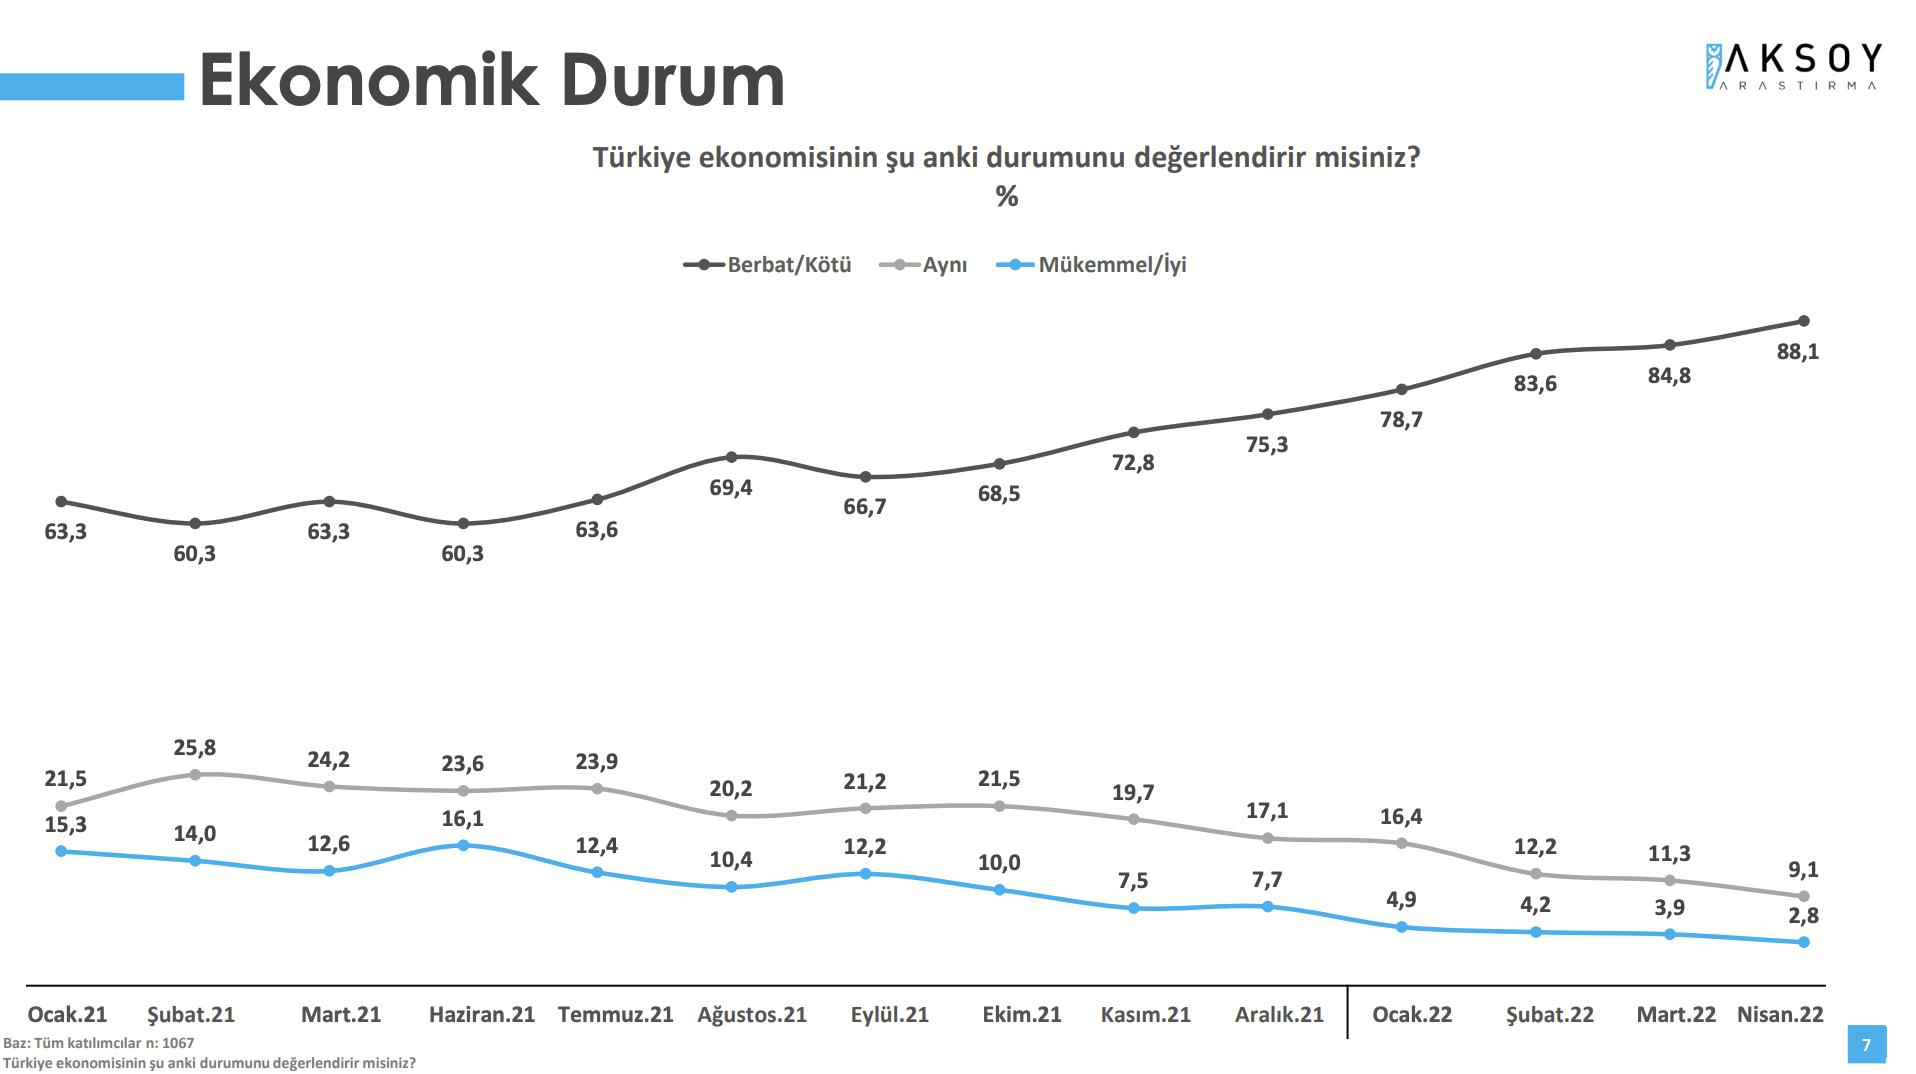 Türkiye ekonomisinin şu anki durumu “berbat” diyenlerin oranı yüzde 88,1  oldu. Yüzde 9,1 “aynı”, yüzde 2,8 ise “mükemmel /iyi” yanıtını verdi. 